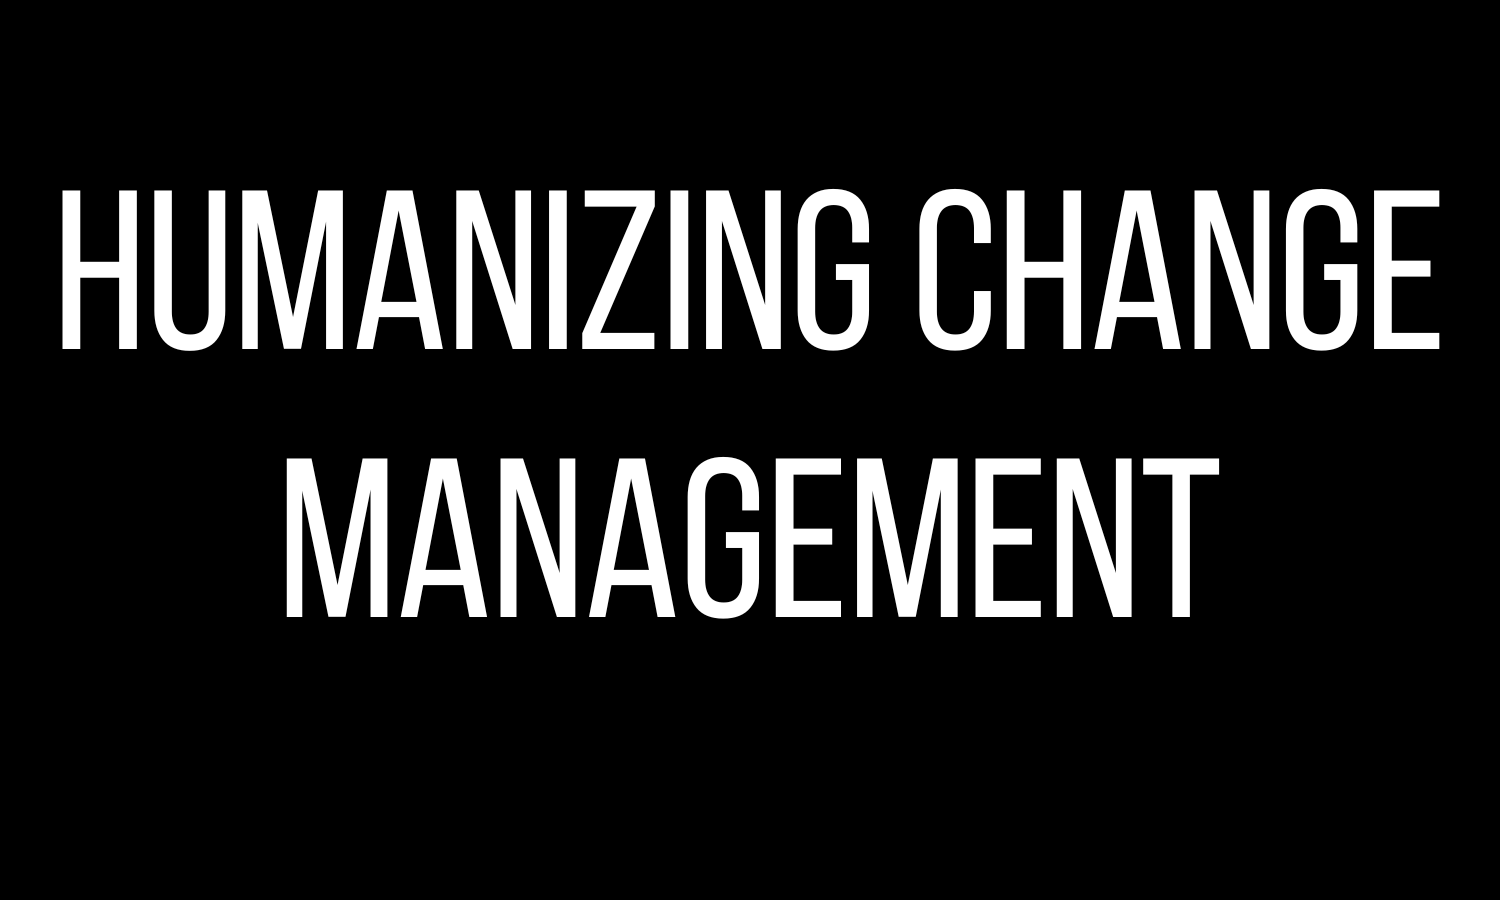 Humanizing Change Management